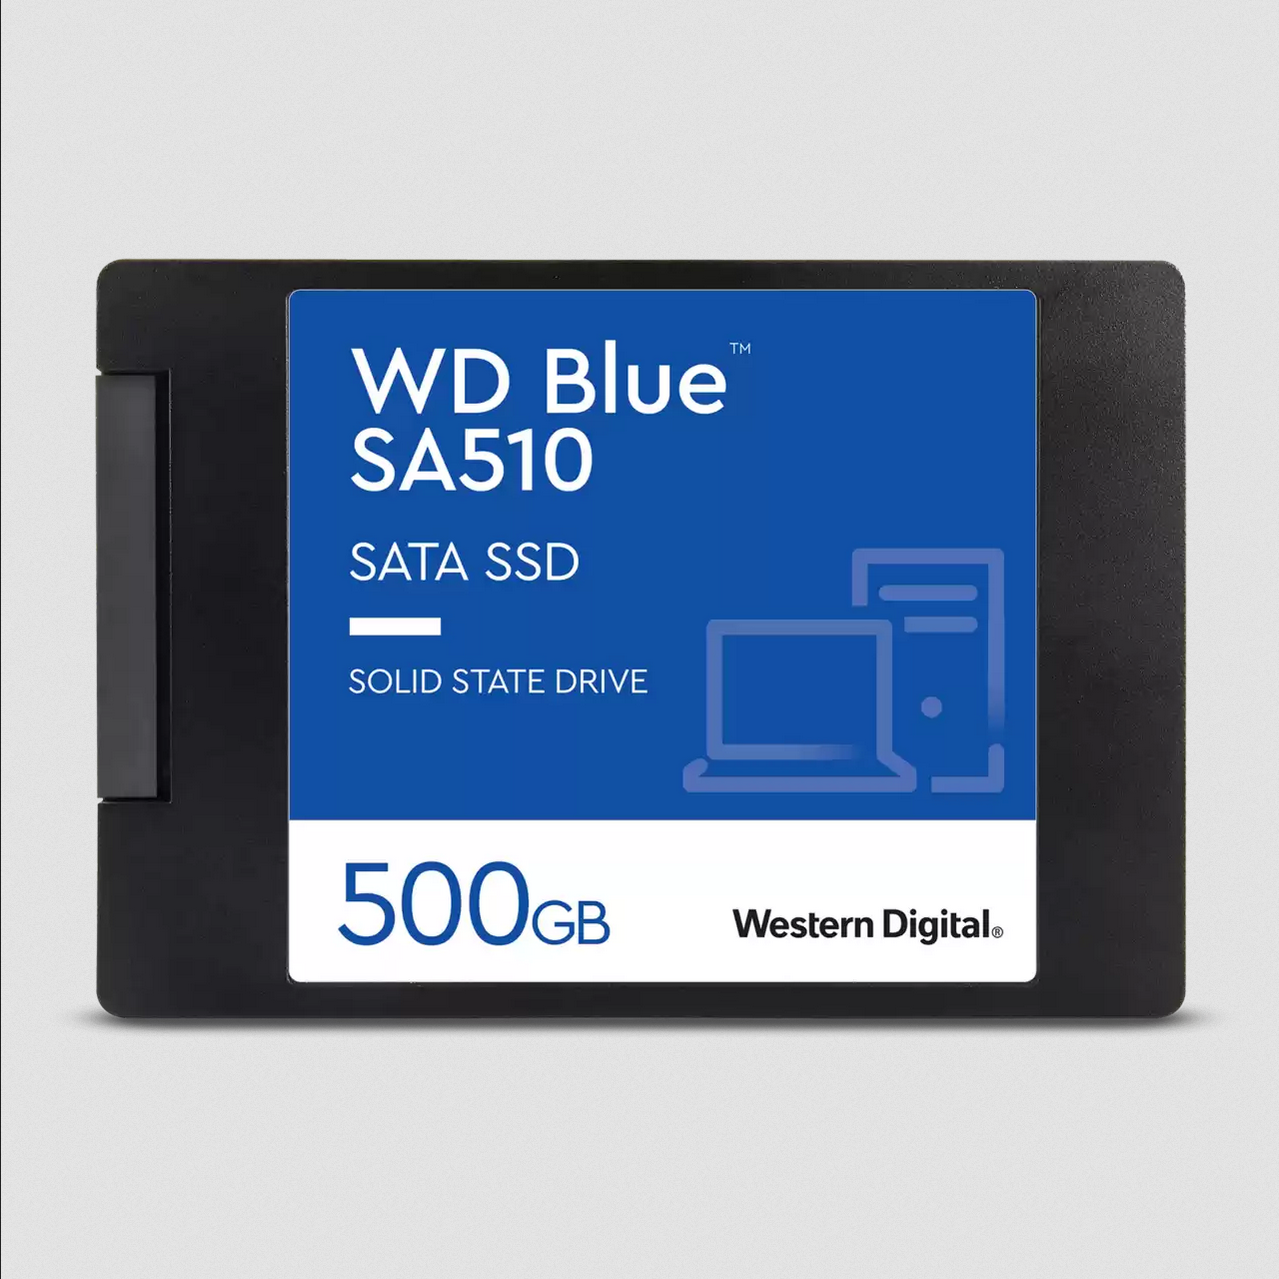 รูปภาพเพิ่มเติมเกี่ยวกับ WD BLUE SA510 500GB SATA SSD , 2.5"  (WDS500G3B0A) ประกัน Synnex 5ปี